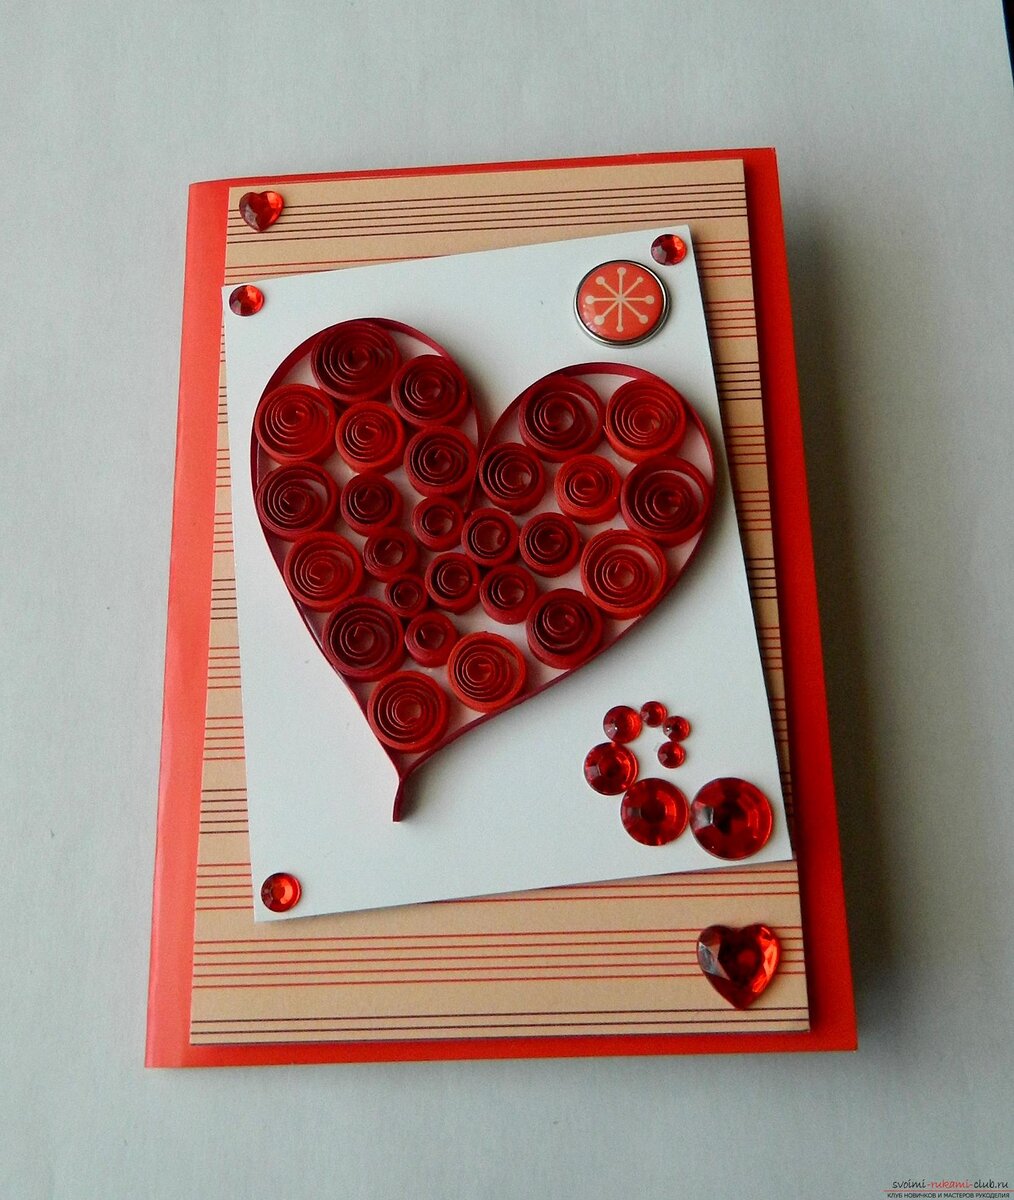 Валентинки своими руками — красивые открытки, поделки, сердечки. Идеи и мастер-классы